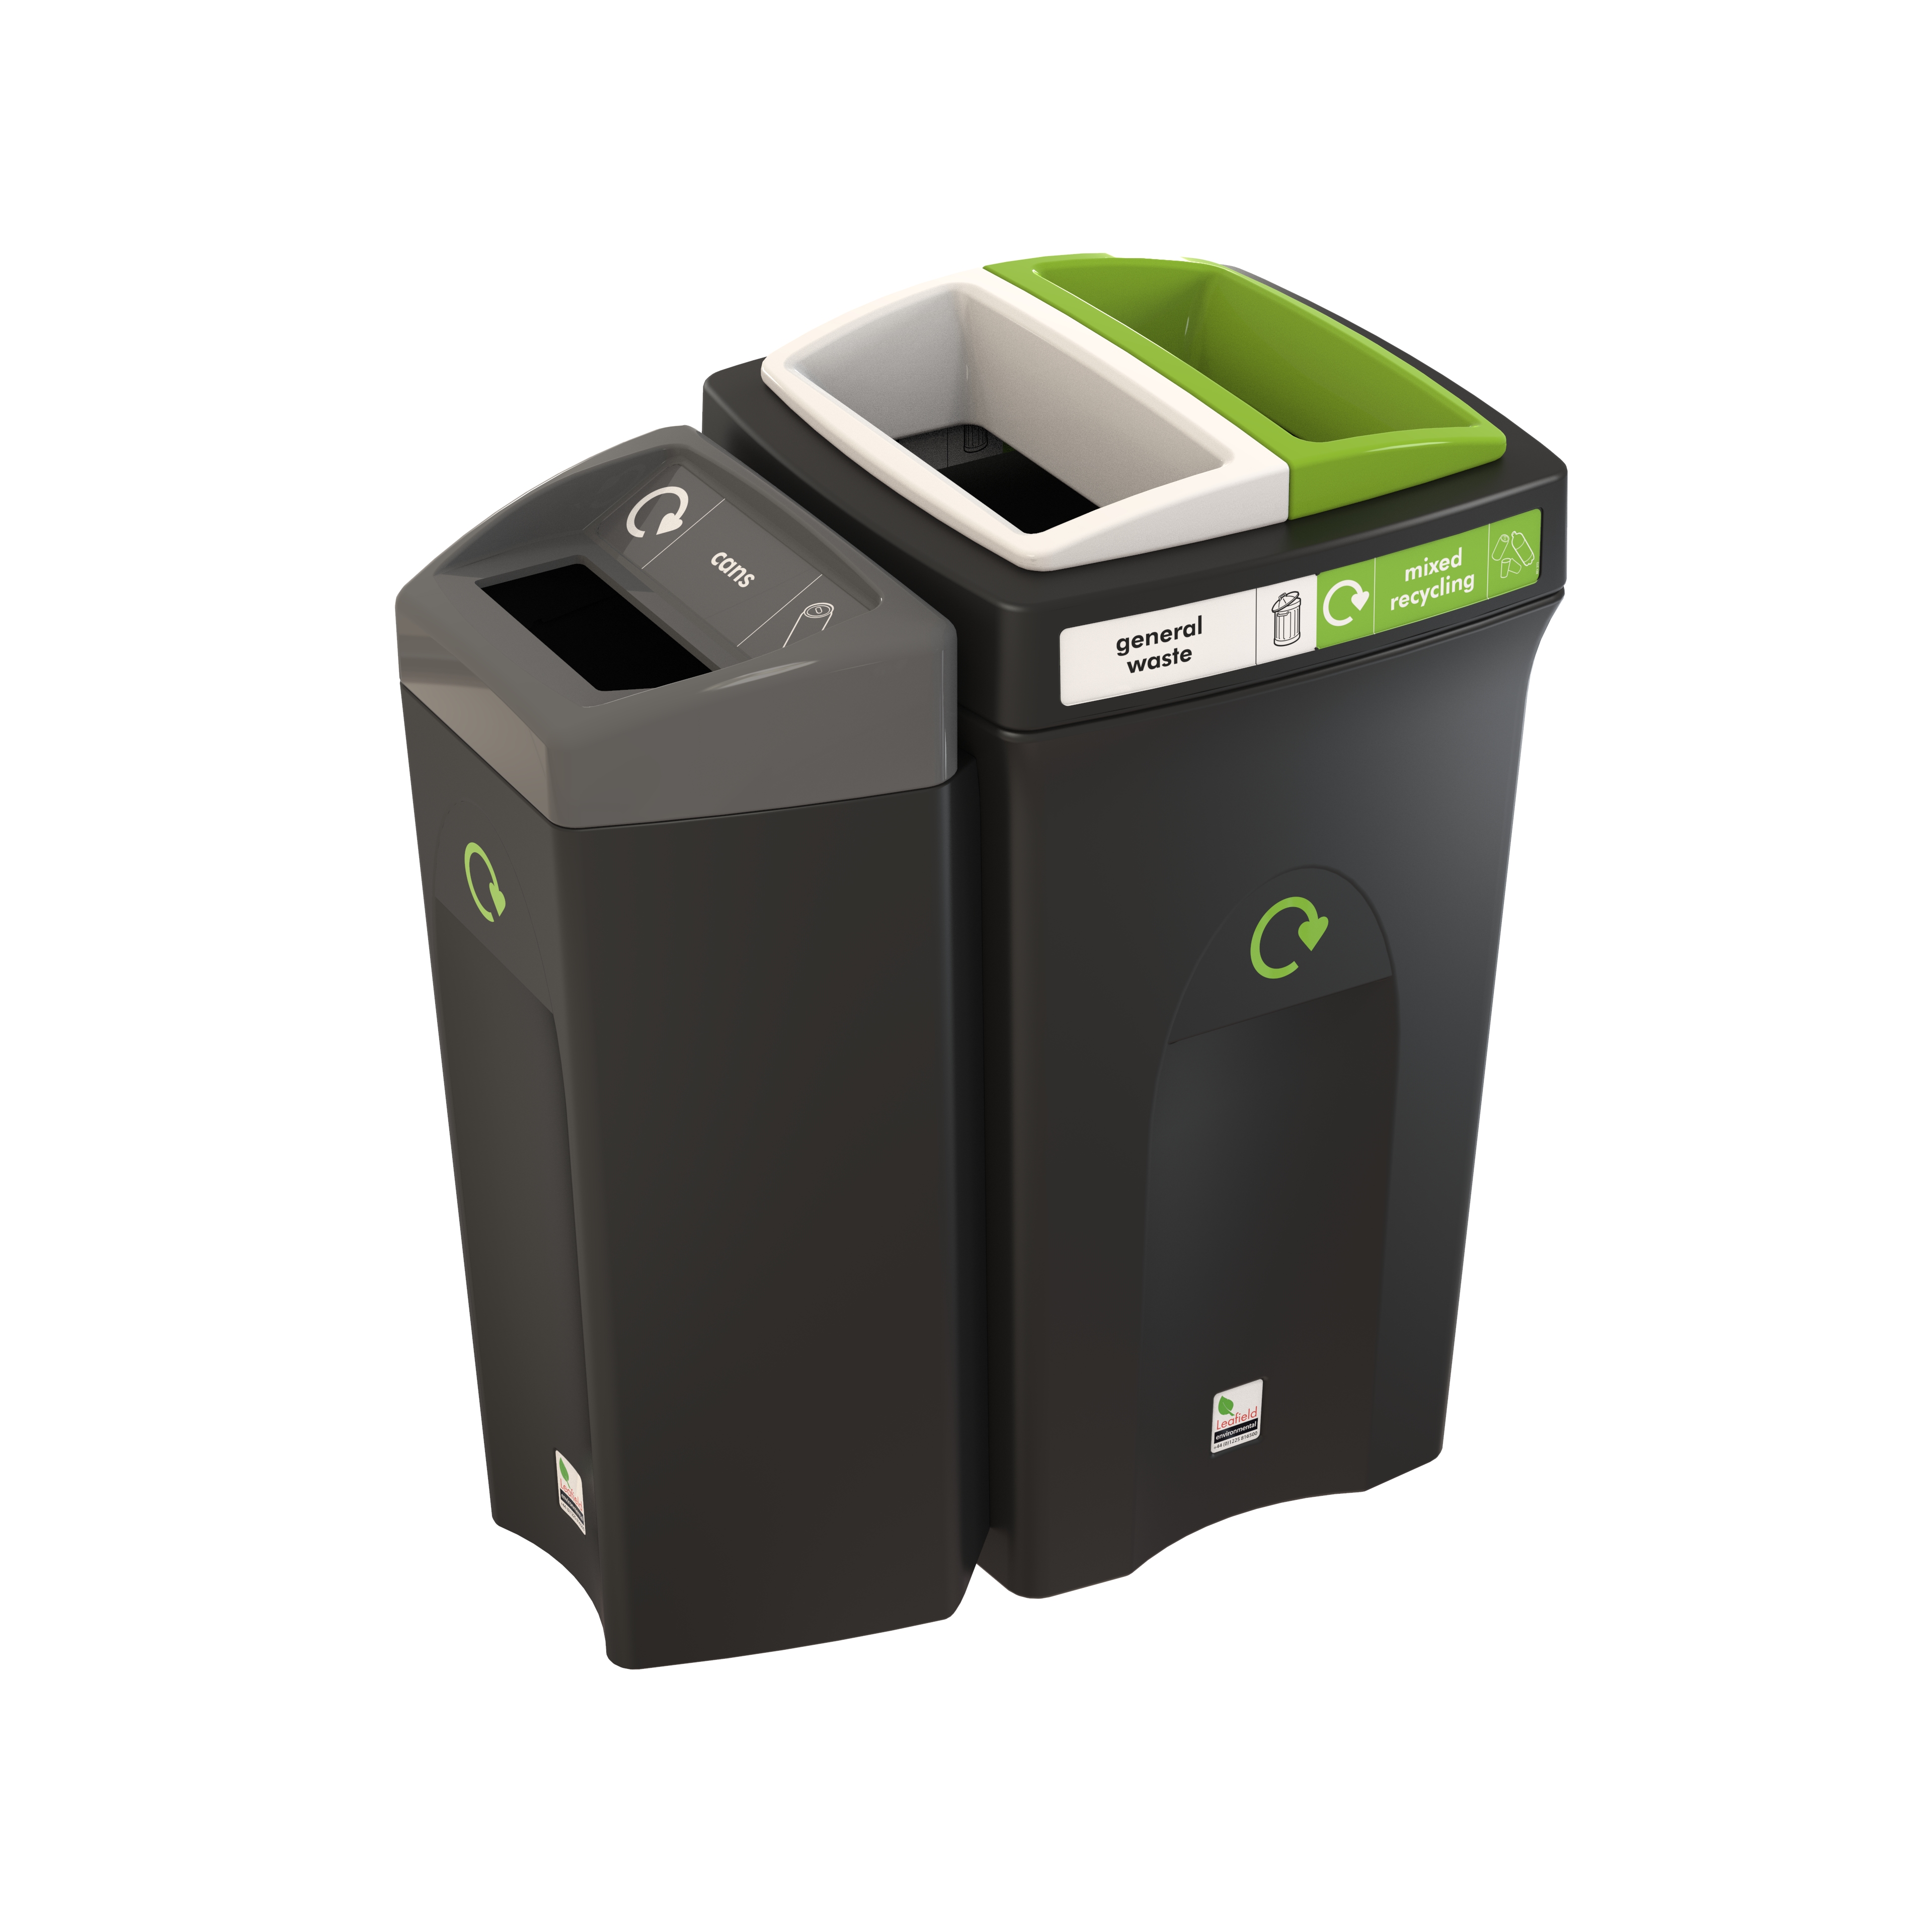 Envirobin Hub: (143) 3 Waste Streams Recycling Bin